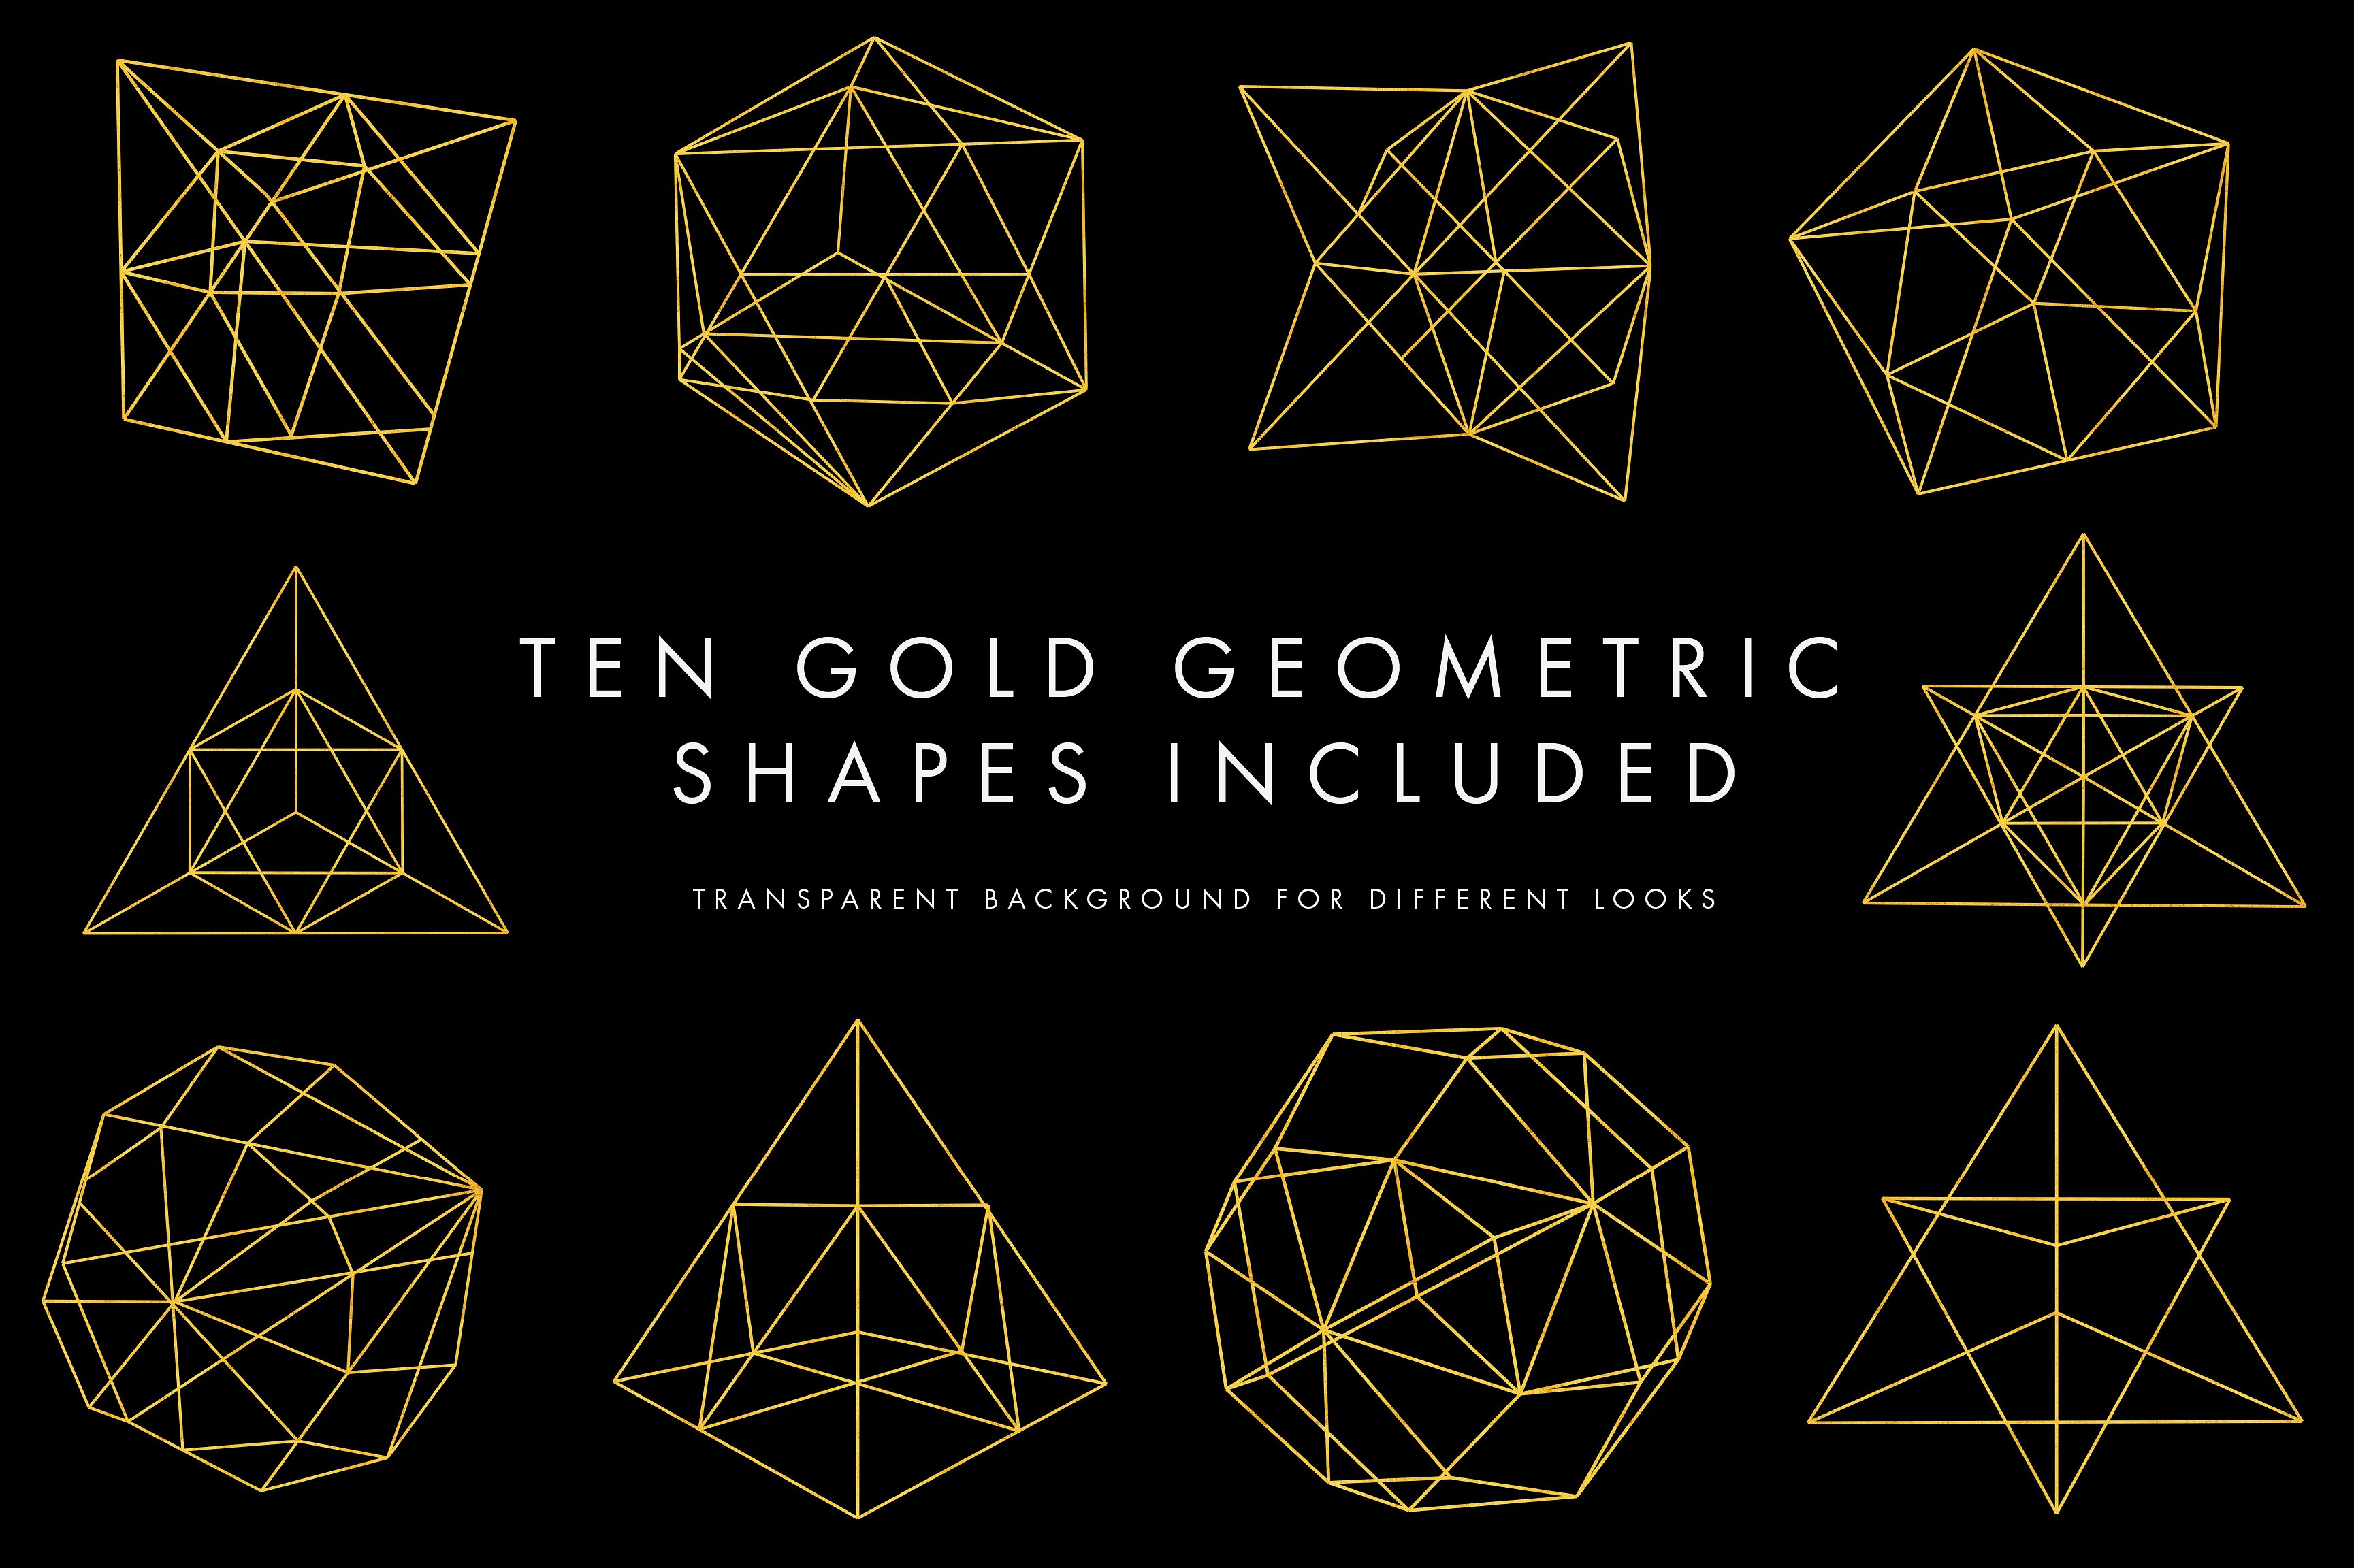 几何线条形状设计素材Metallic Geometric B